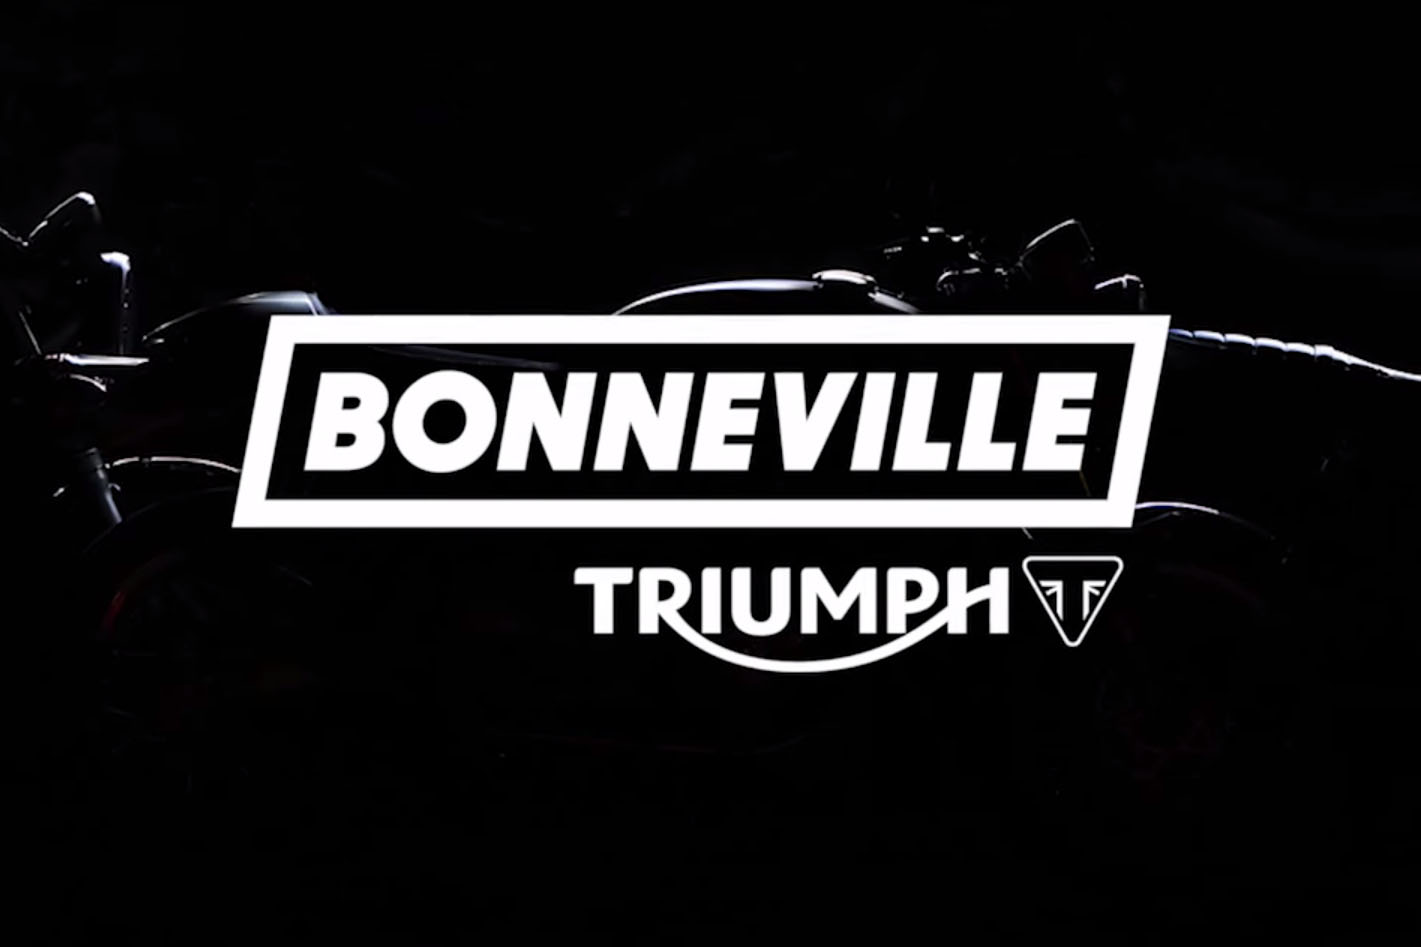 New Triumph Bonneville confirmed